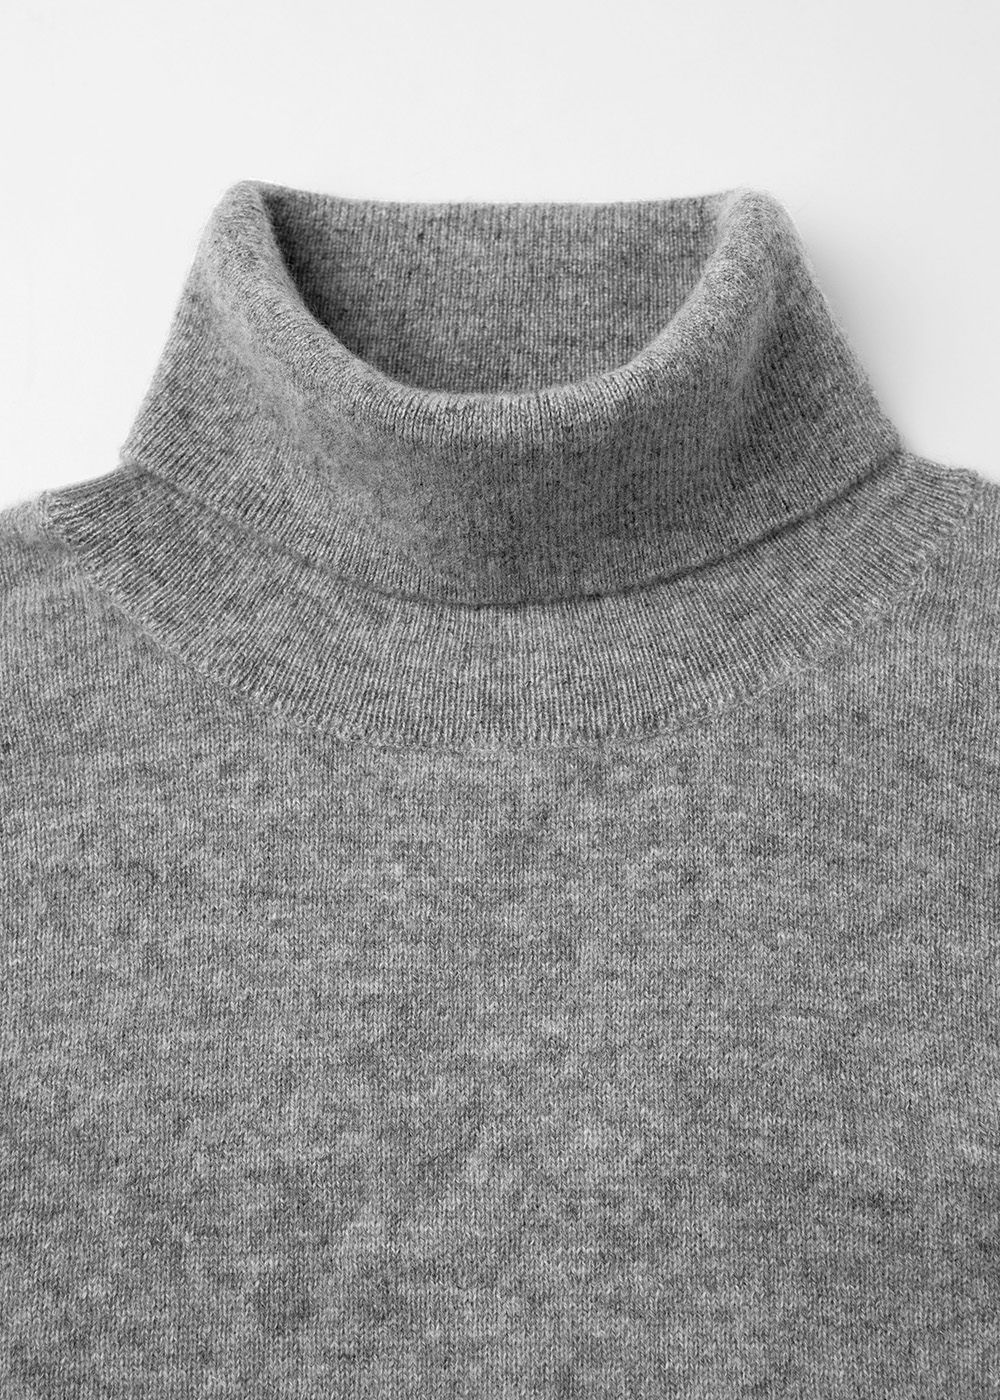 Cashmere 30% Blended Turtleneck Knit _ gray